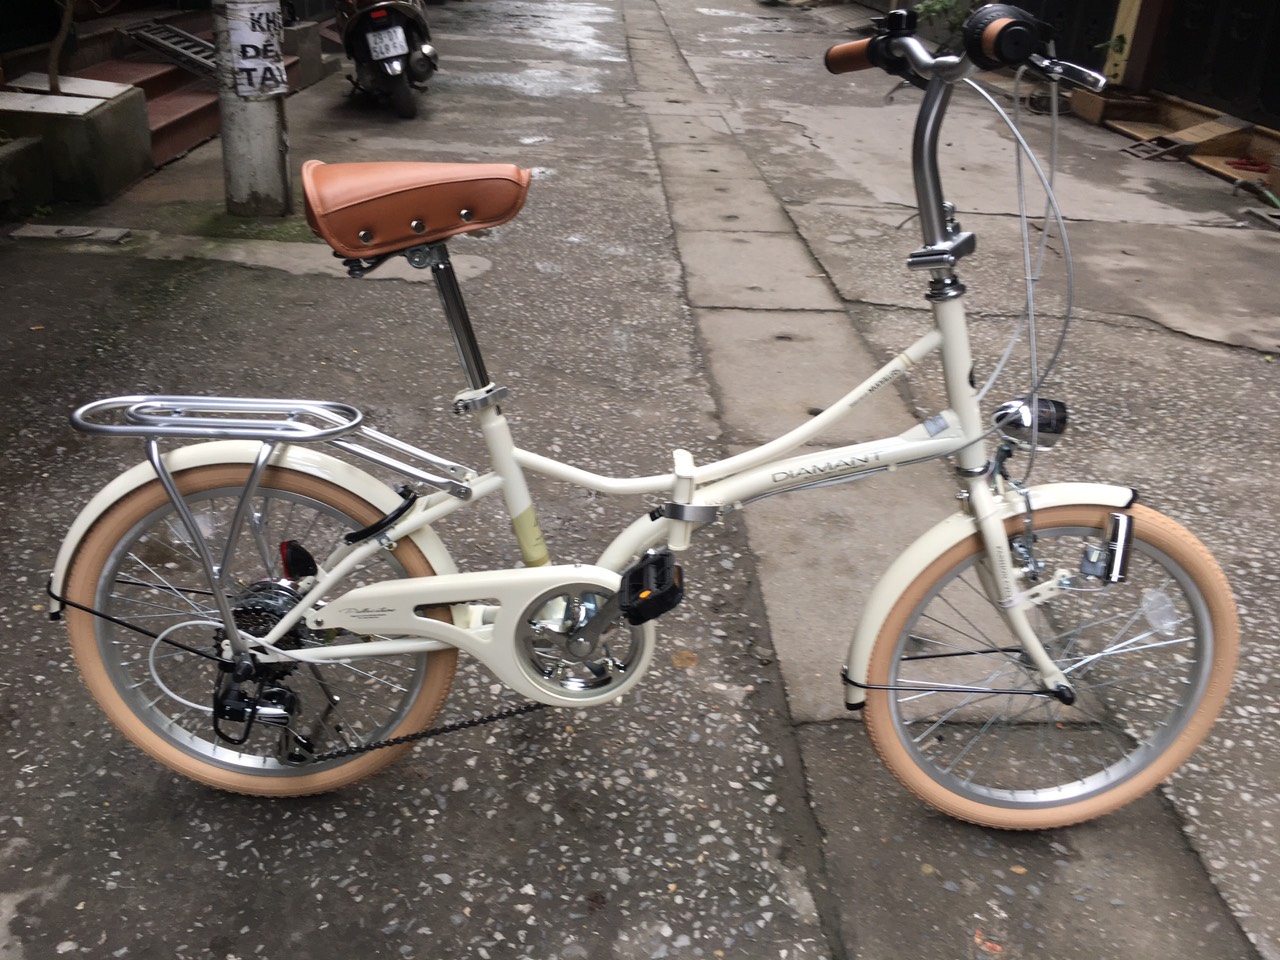 Xe đạp gấp hiệu Mypallas của Nhật hàng mới (Còn hàng)